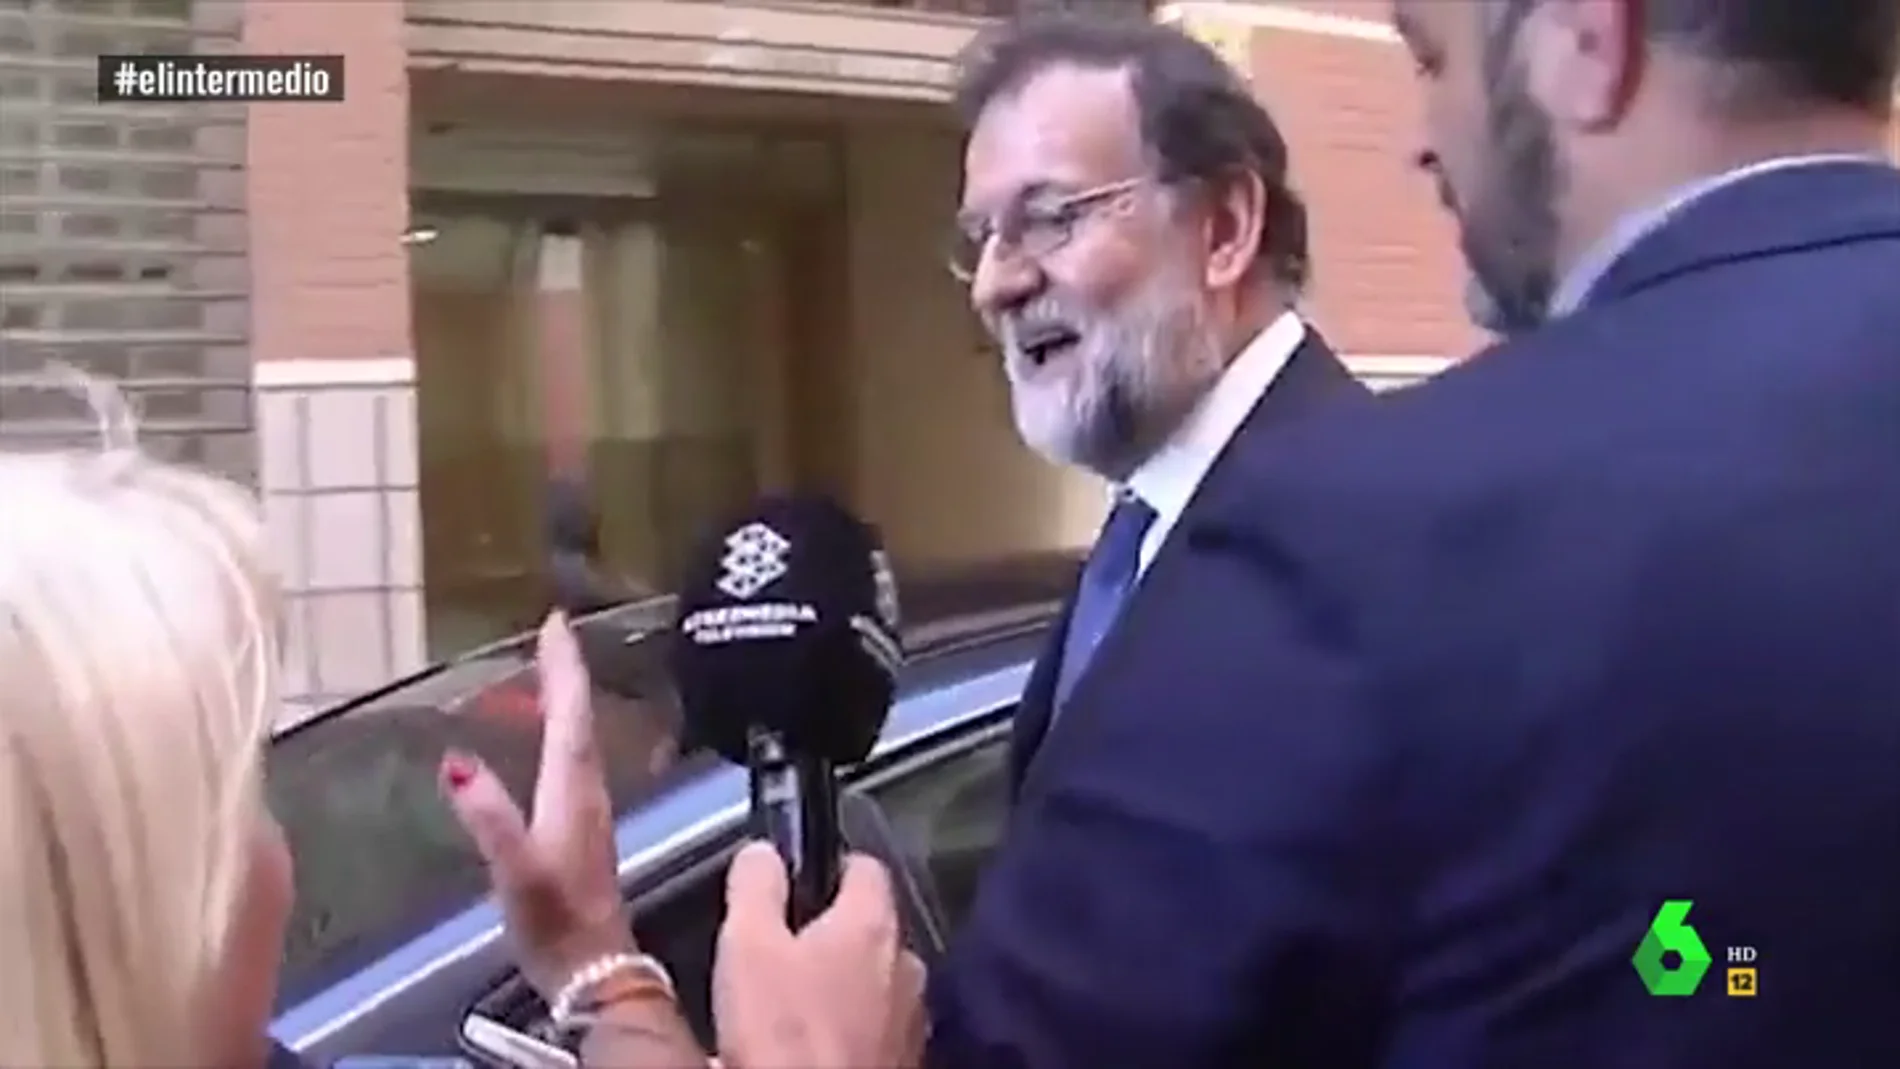 Dani Mateo, sobre la llegada de Rajoy a Santa Pola: "Llegó a firmar registros y ha acabado firmando autógrafos"